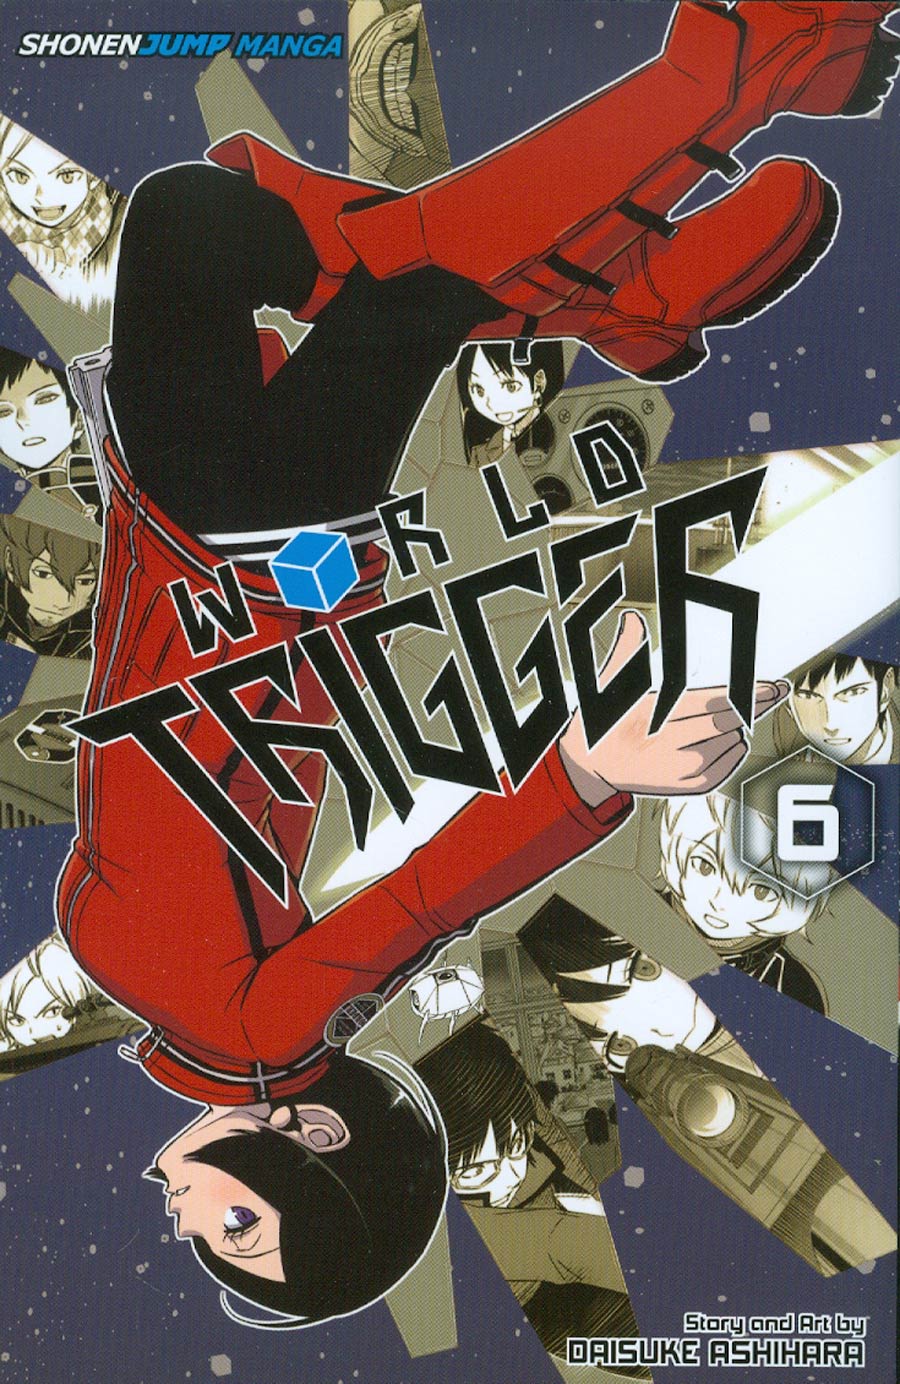 World Trigger Vol 6 TP